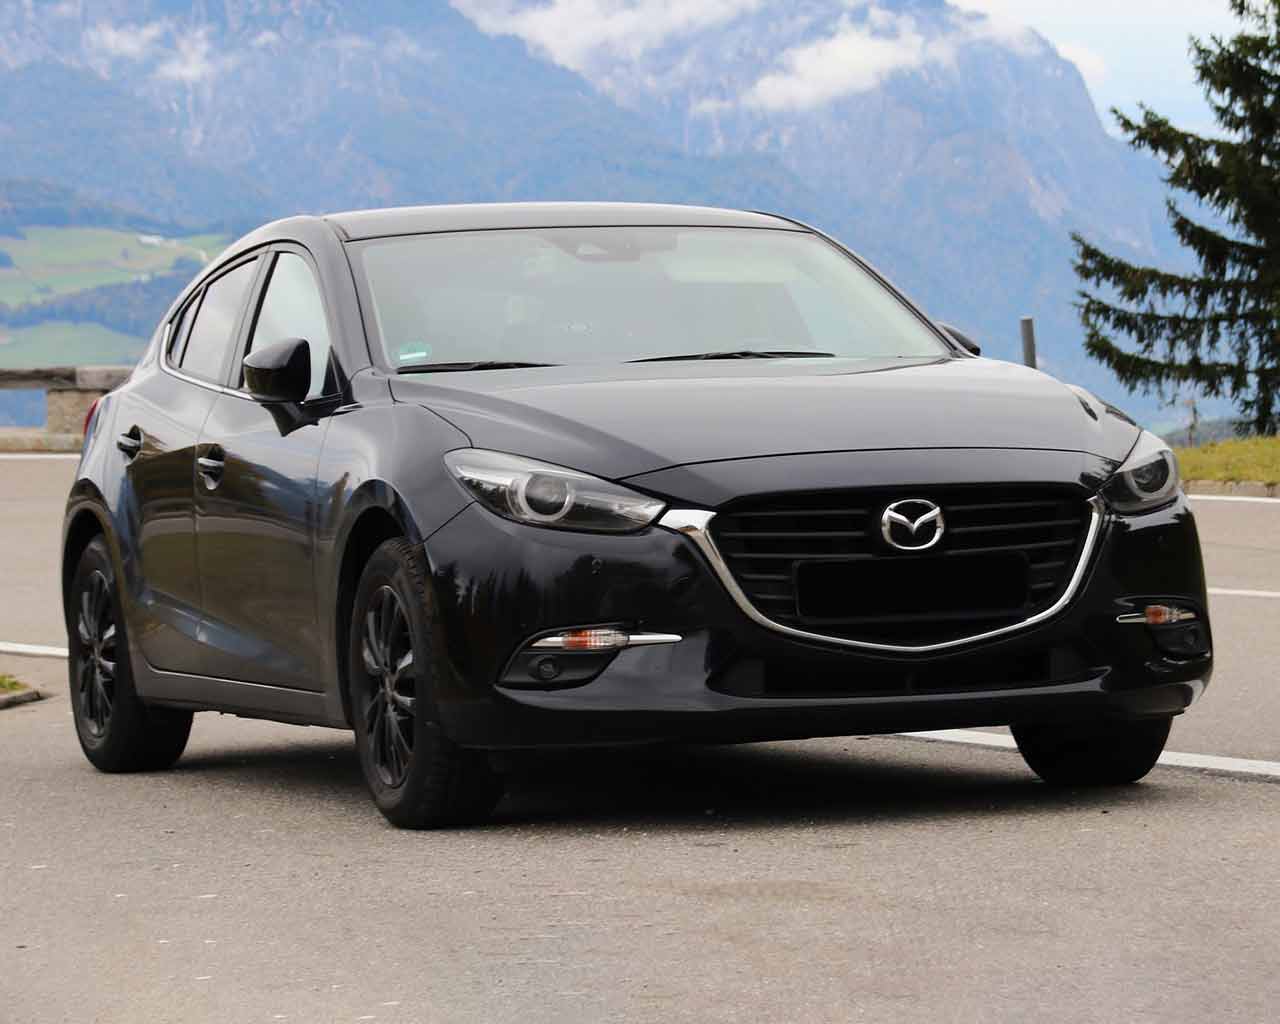 https://gebrauchtwagenberater.de/wp-52593-content/uploads/2023/03/Mazda-3-III-BM-BN-2013-2019-Probleme-und-Schwachstellen.jpg